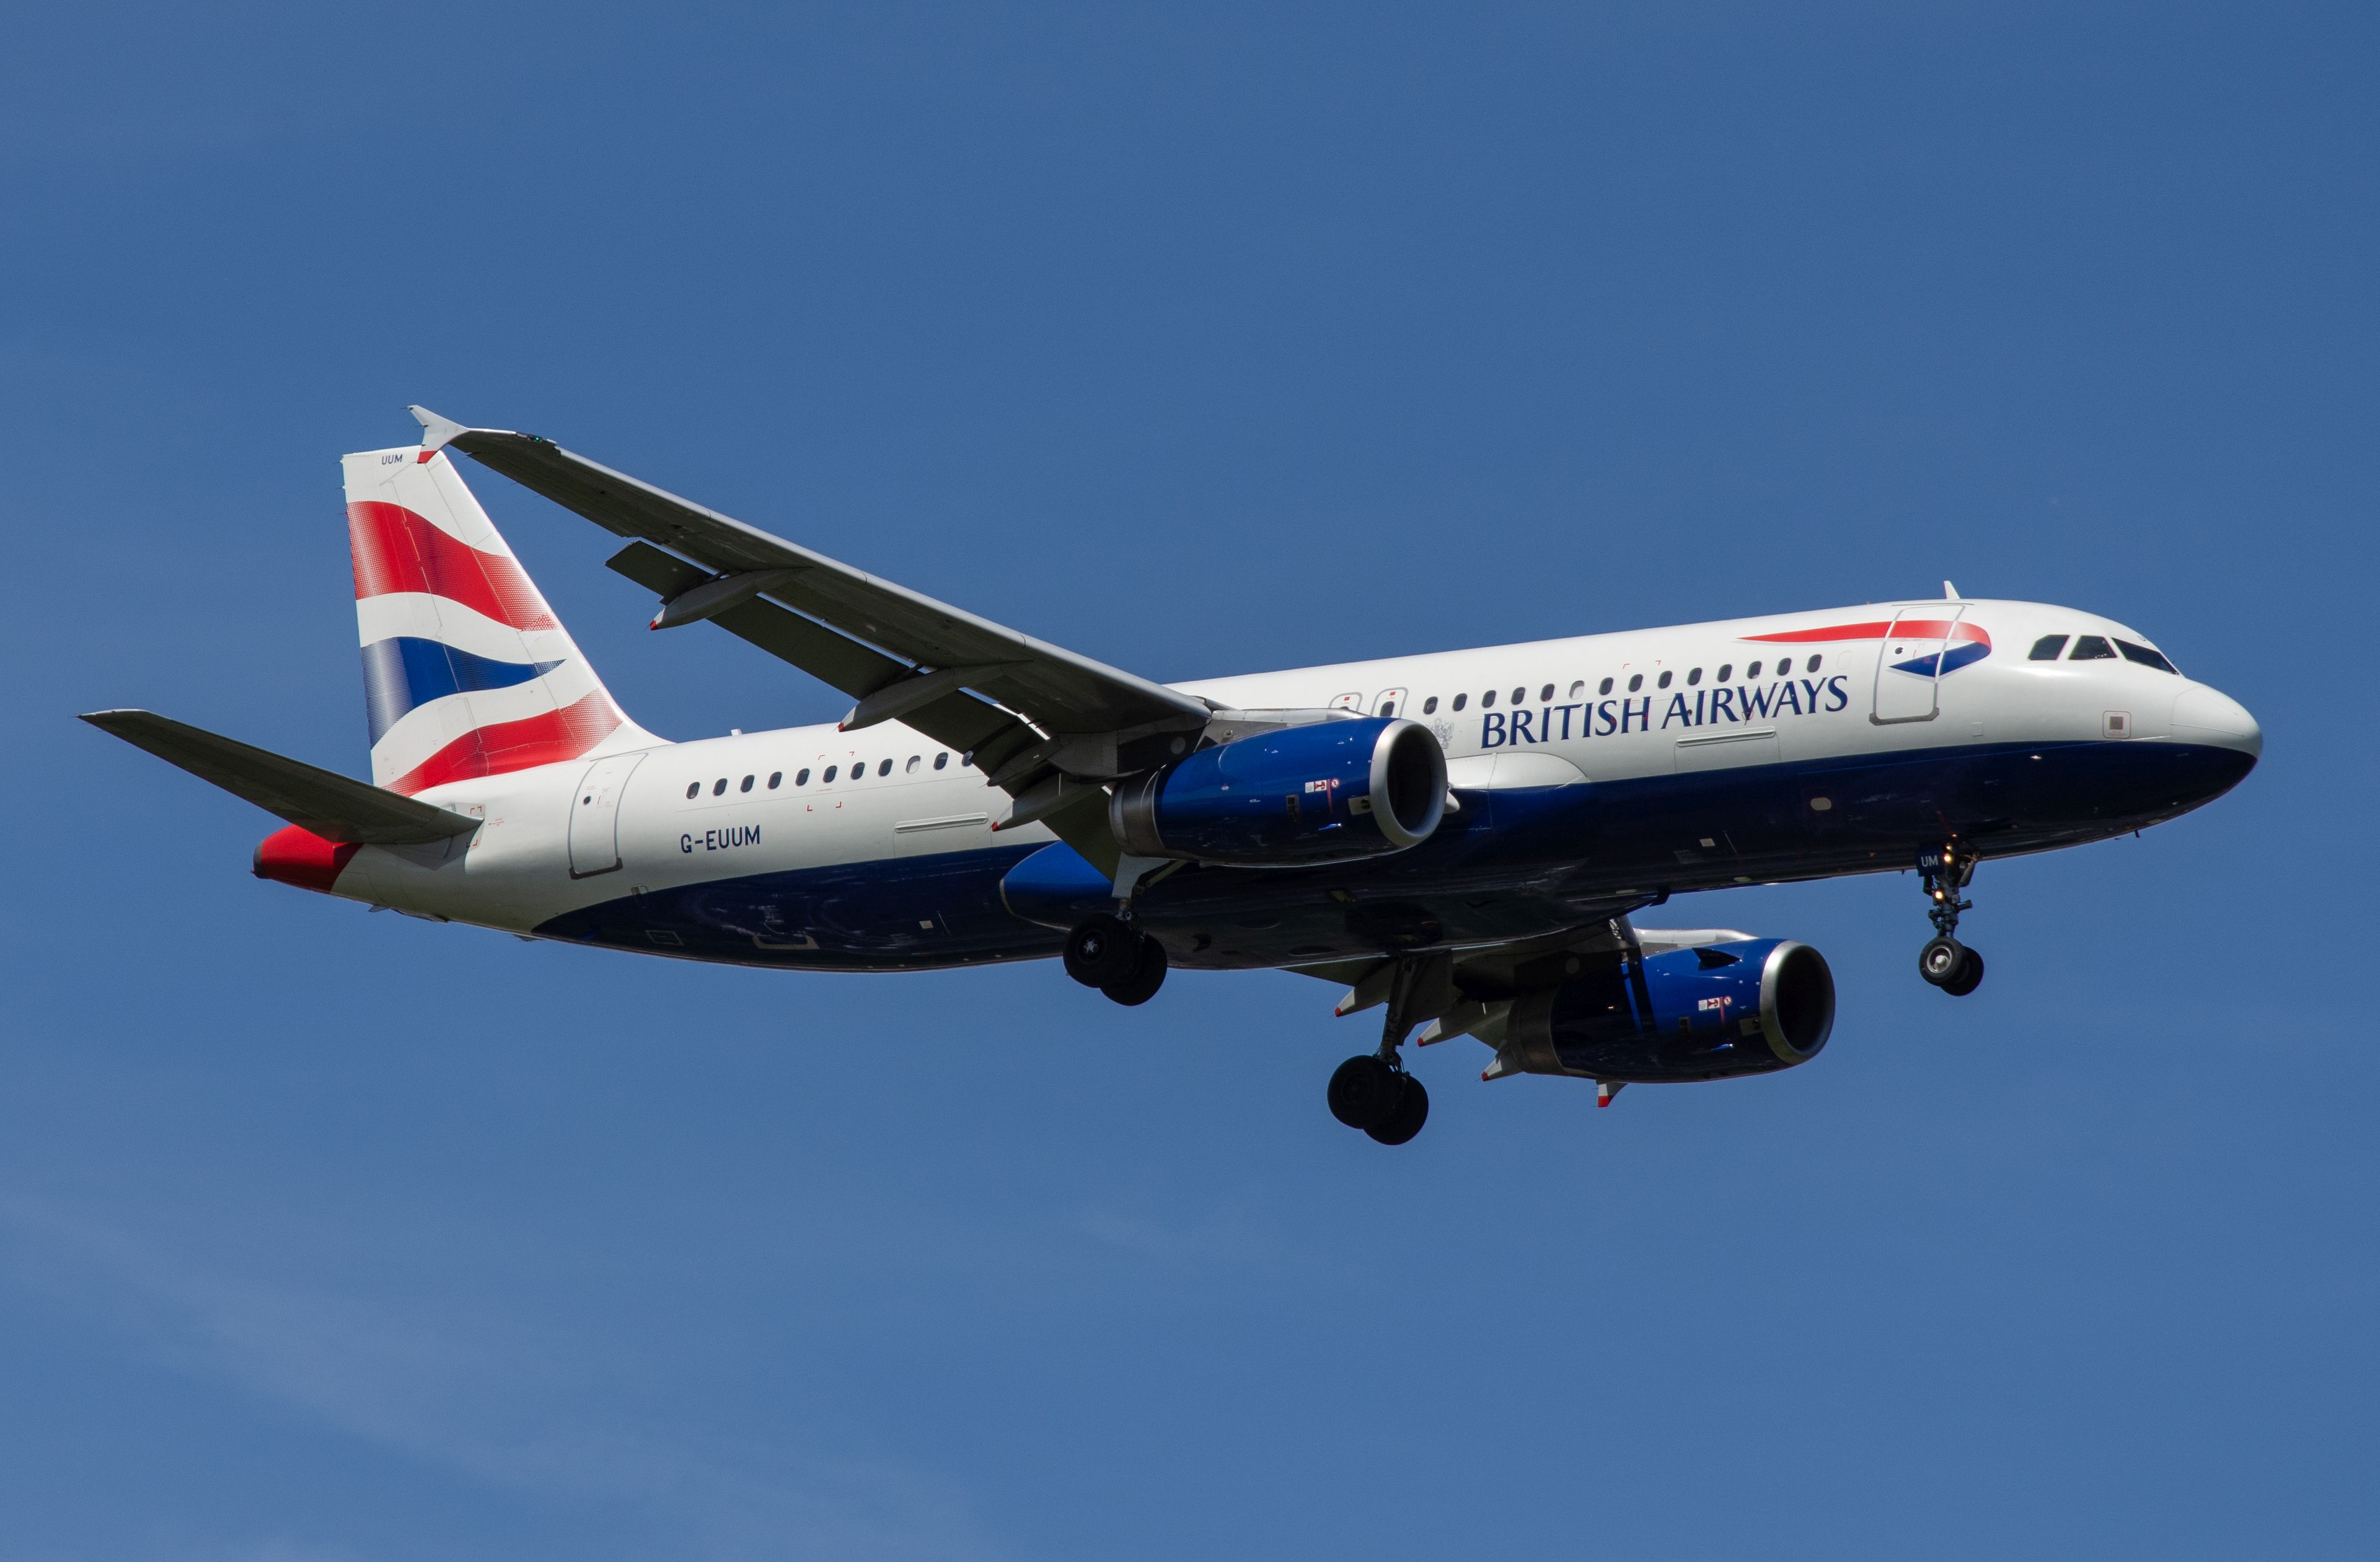 G-EUUM/GEUUM British Airways Airbus A320 Airframe Information - AVSpotters.com